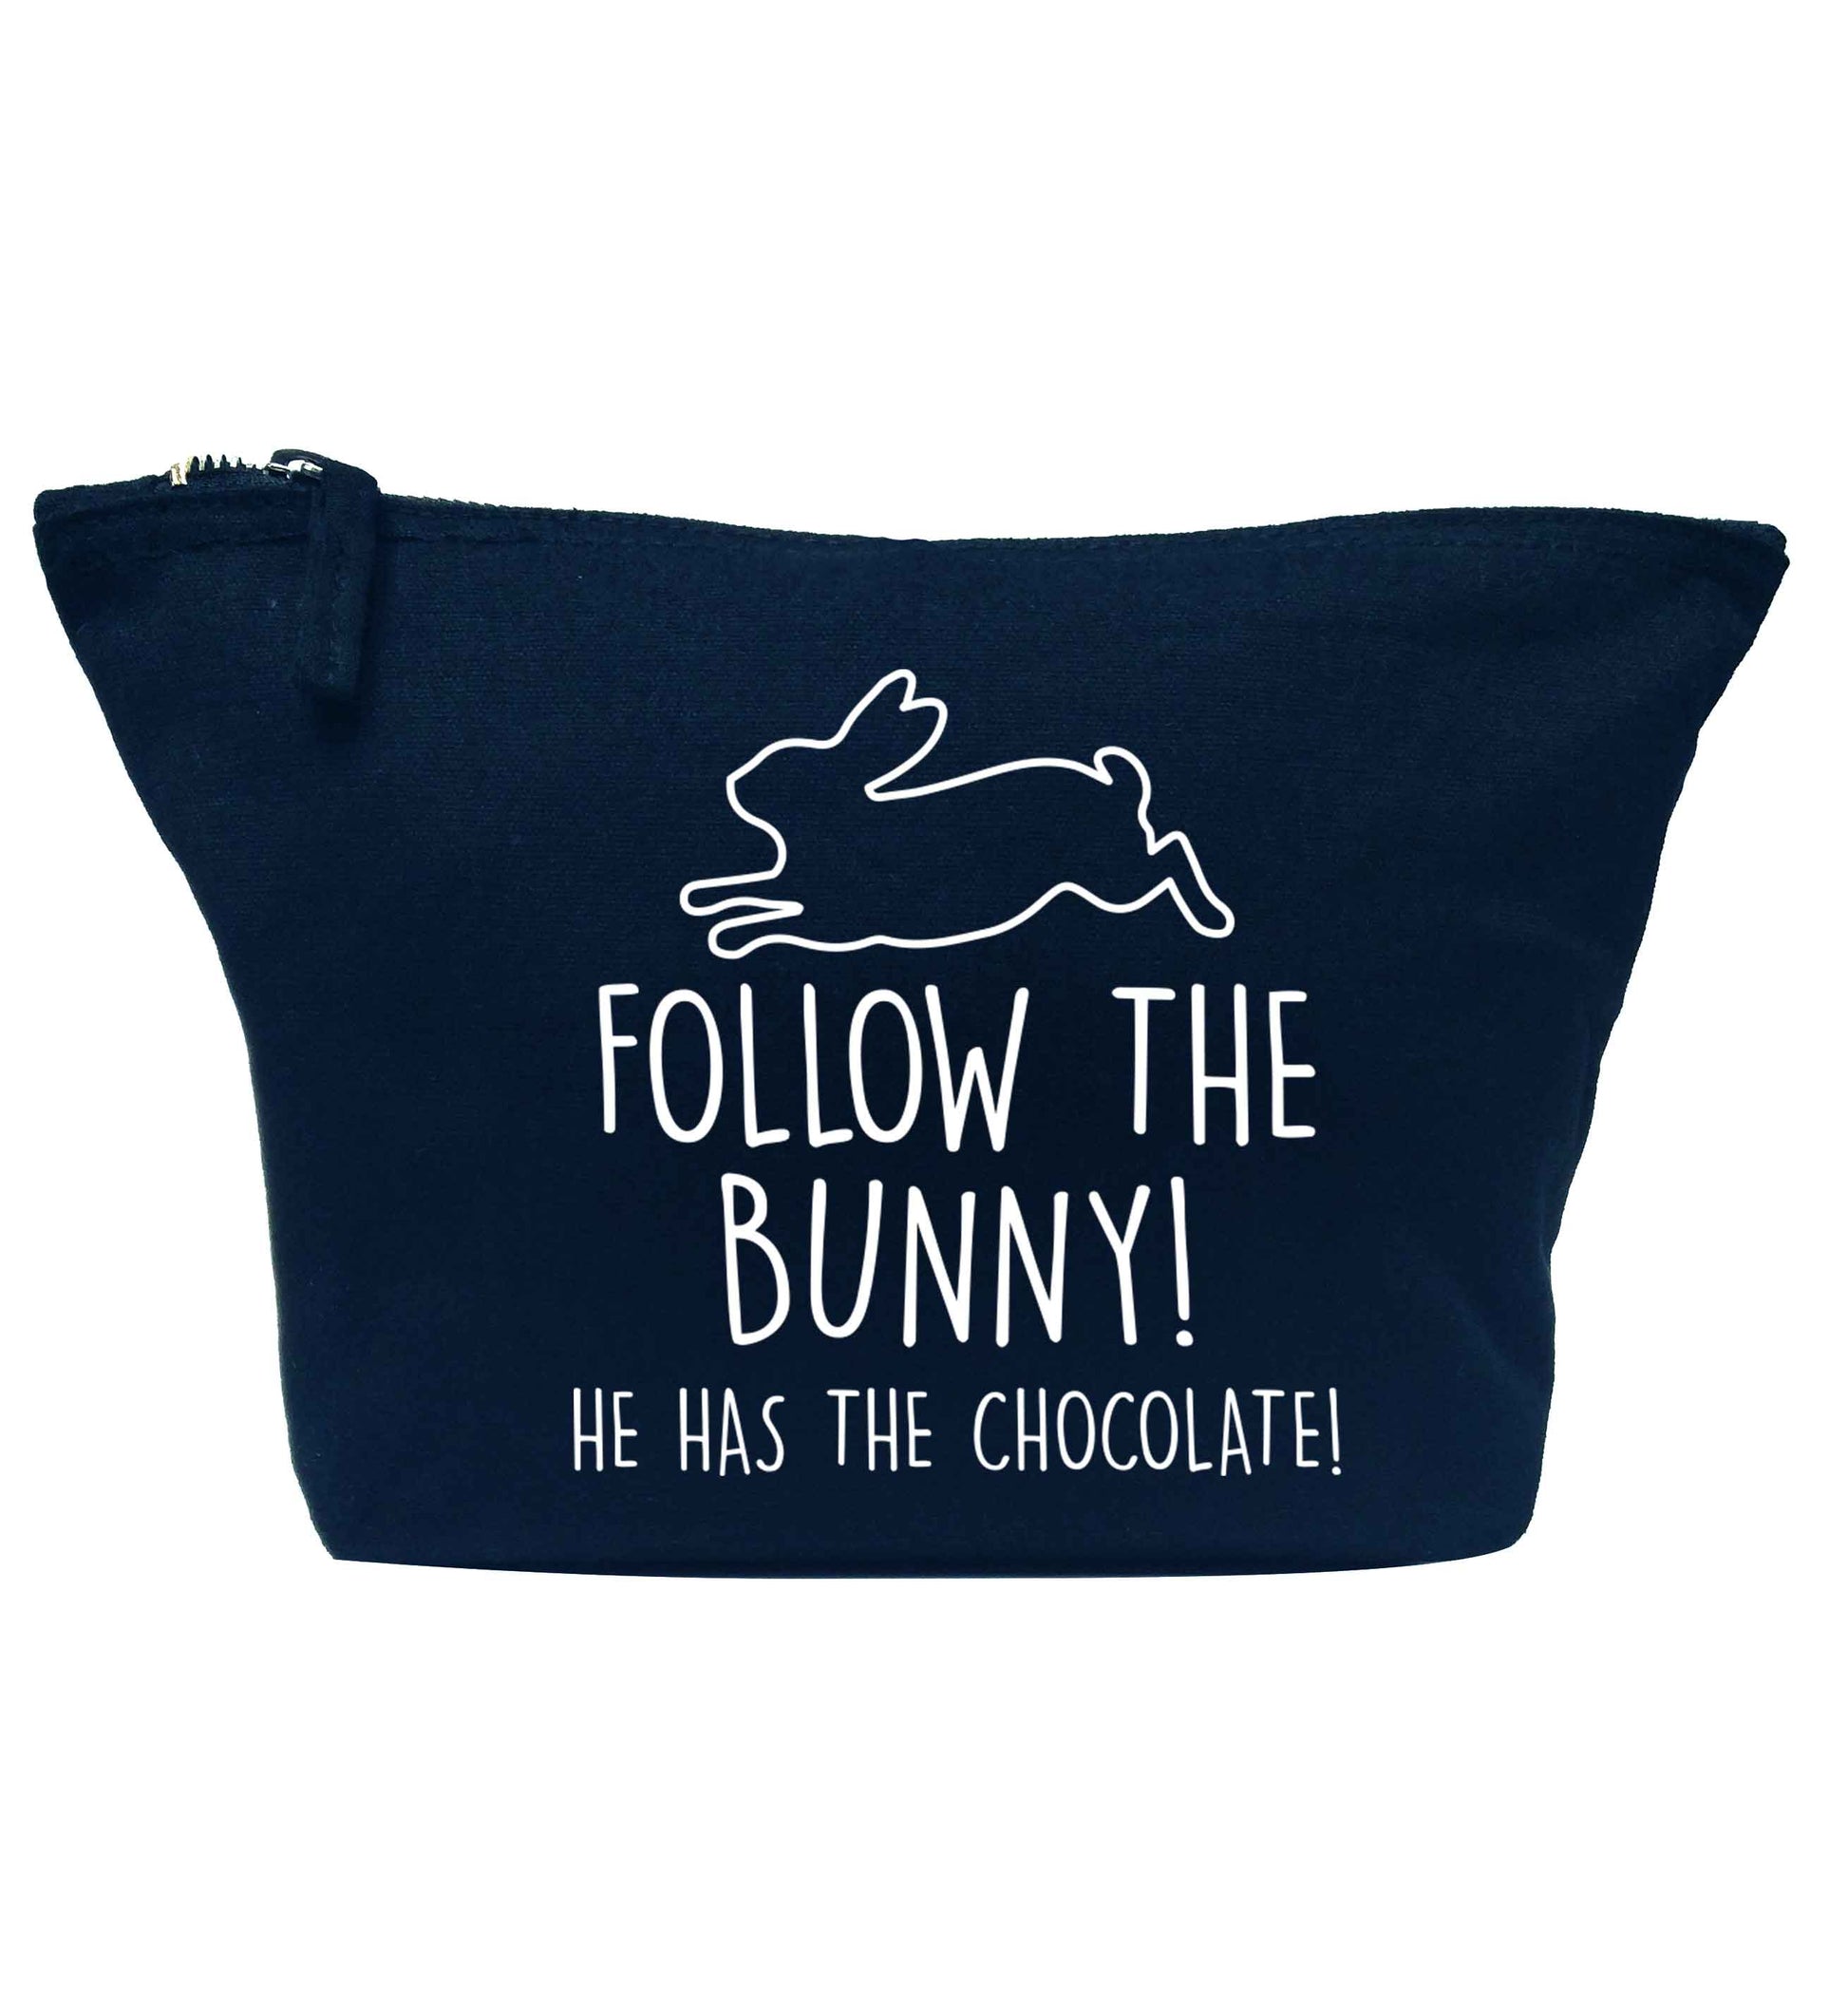 Follow the bunny! He has the chocolate navy makeup bag